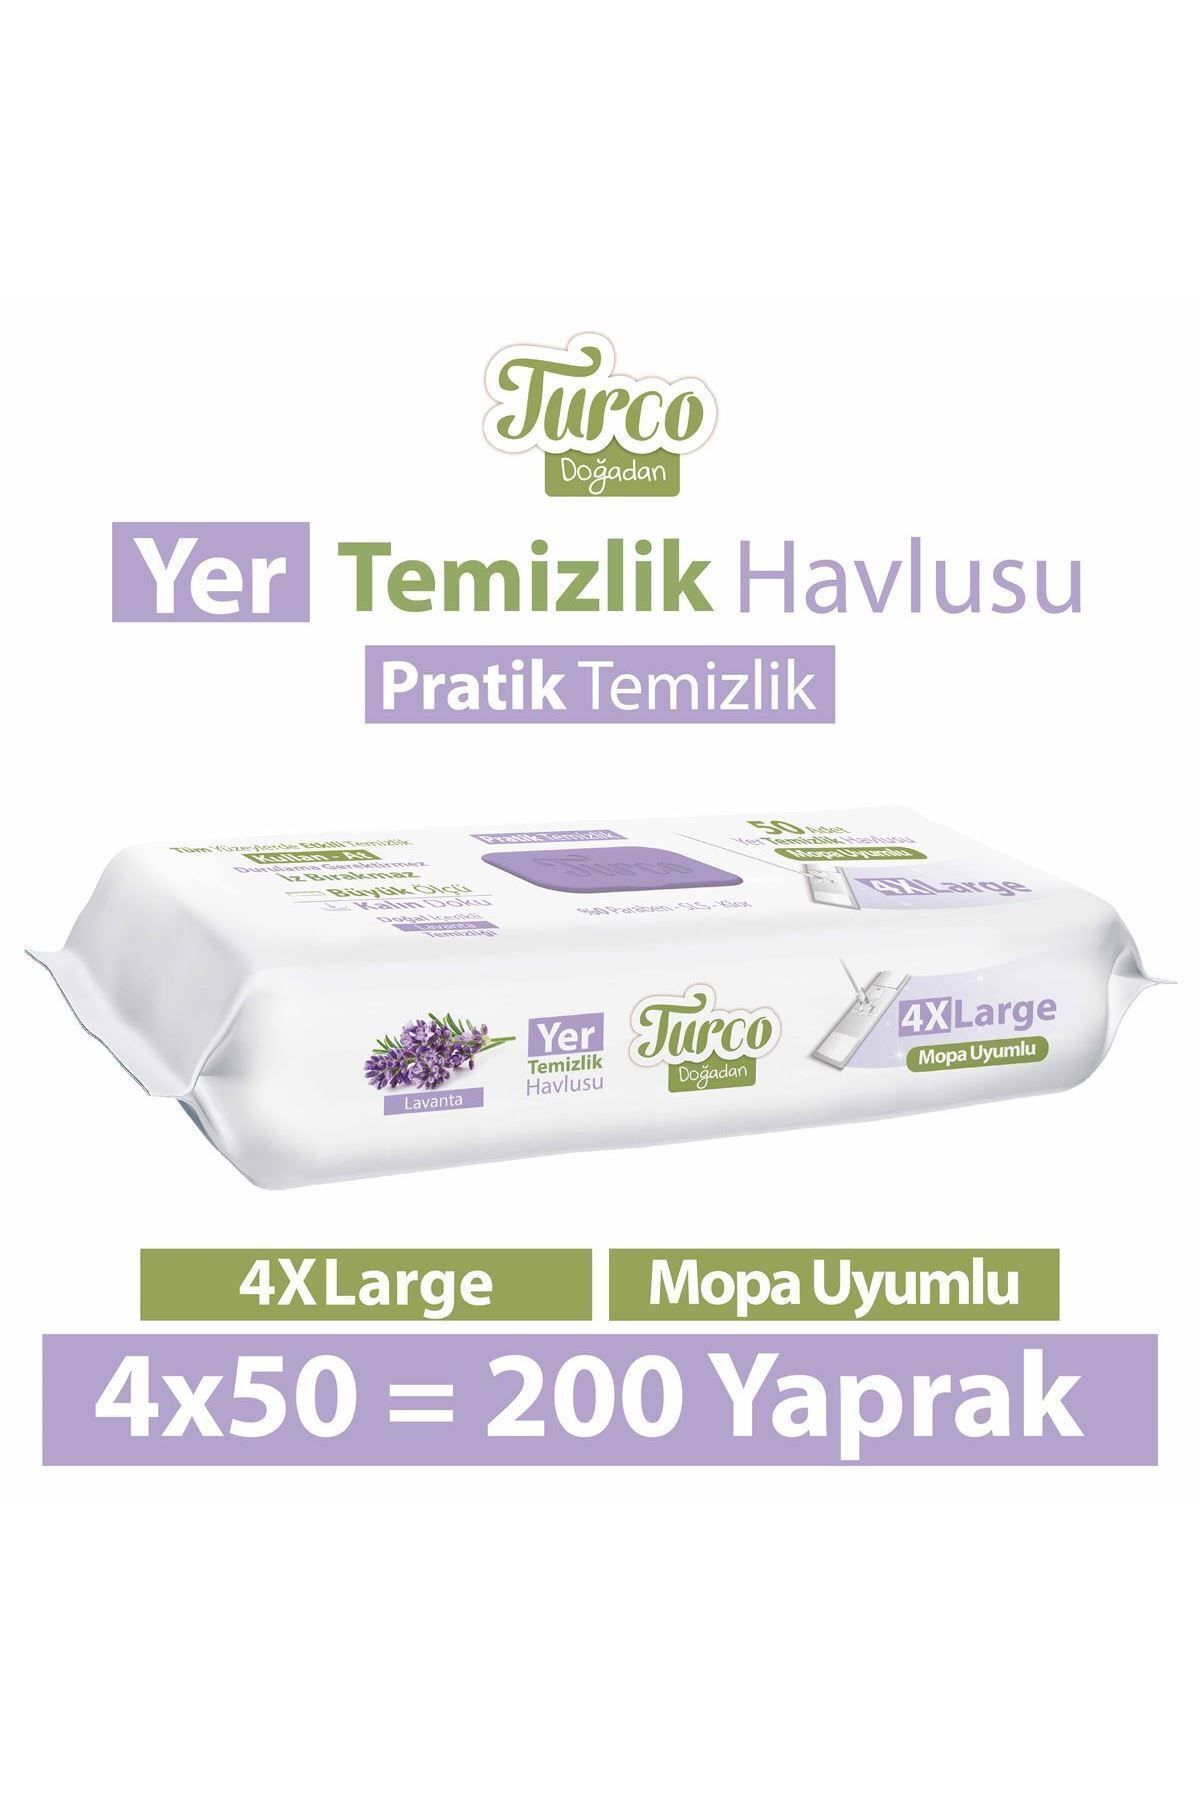 Turco Doğadan Pratik Temizlik Turco Doğadan Yer Temizlik Havlusu Lavanta 4X50(200 Yaprak)